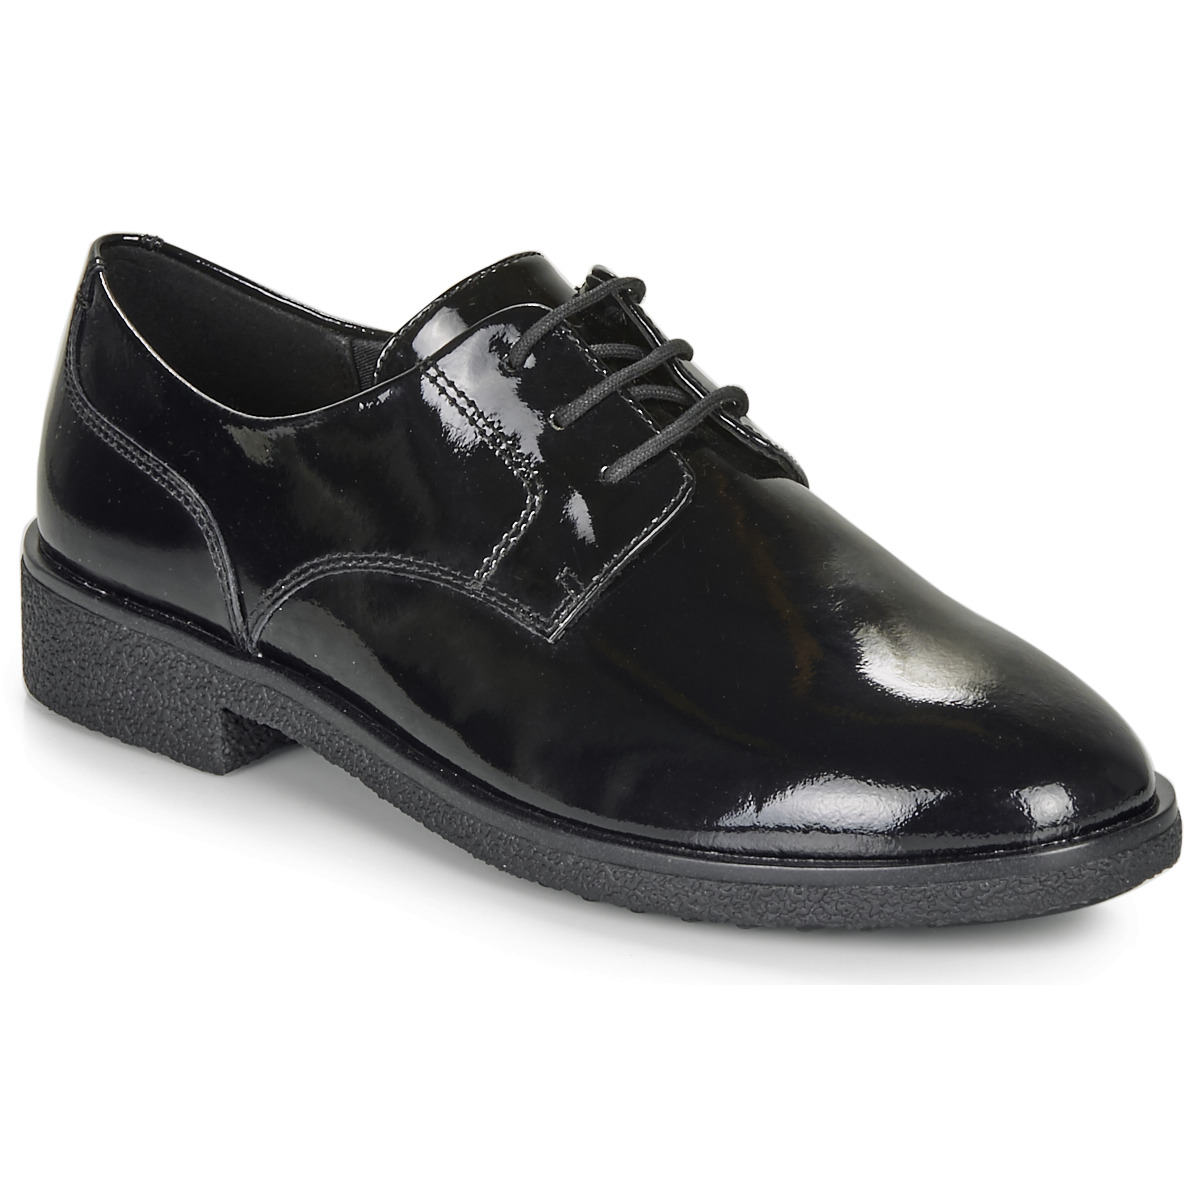 Clarks - Dames schoenen - Griffin Lane - D - black pat - maat 3,5